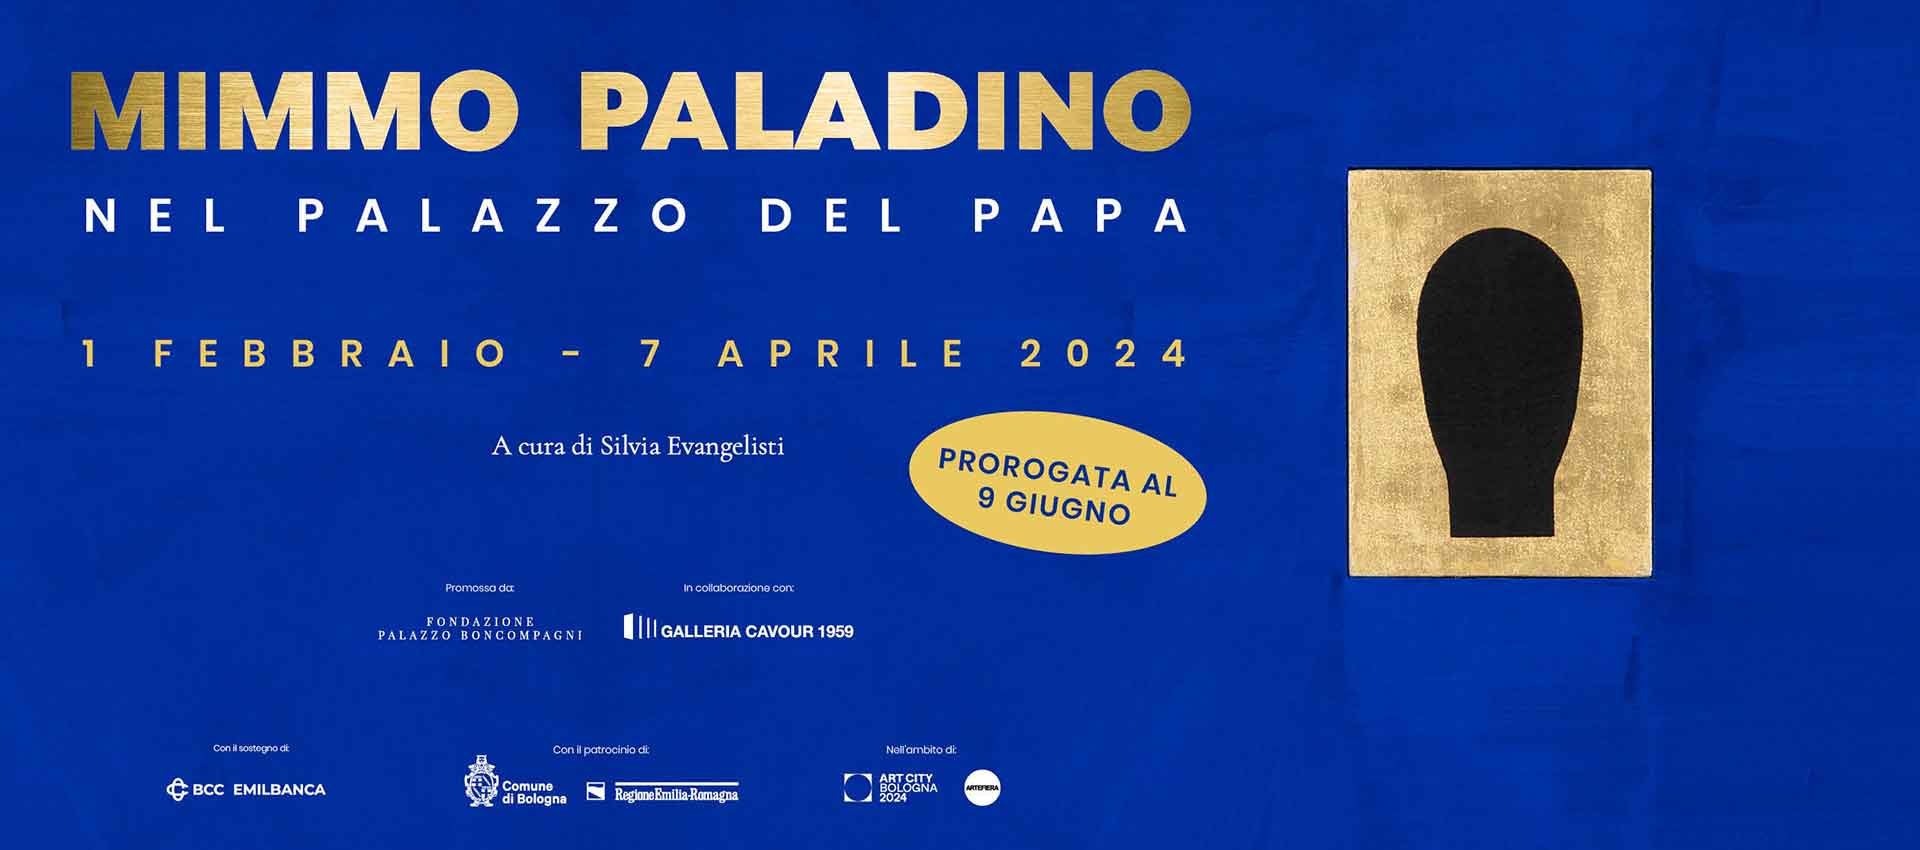 <p>1 febbraio – 9 giugno 2024</p>
<h2>Mimmo Paladino</h2>
<h3>nel Palazzo del Papa</h3>
